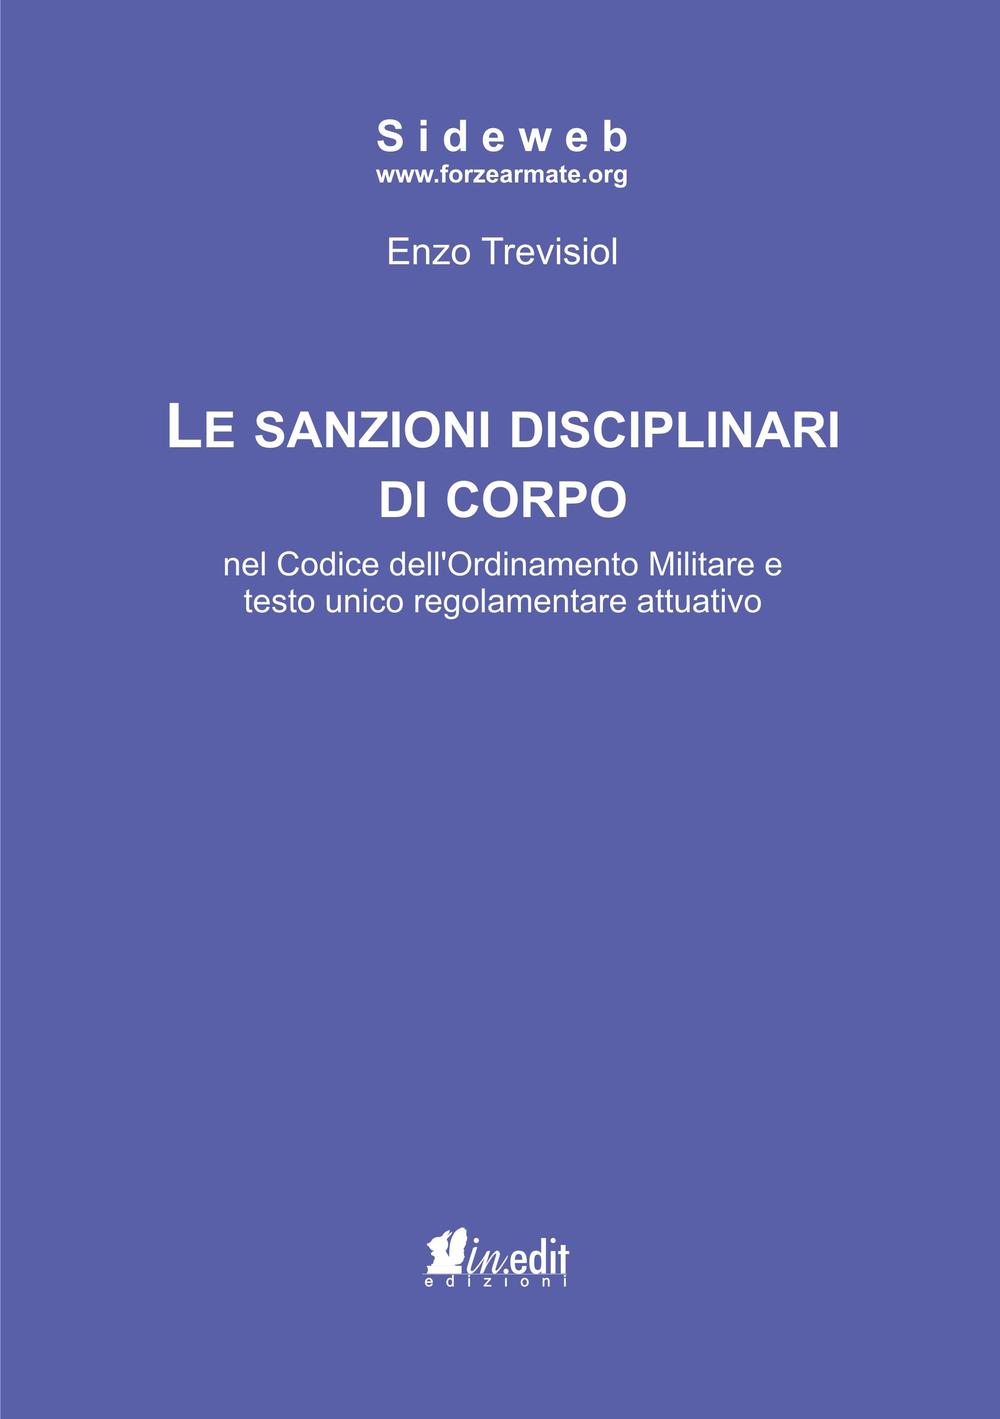 Carte sanzioni disciplinari di corpo nel codice dell'ordinamento militare e testo unico regolamentare attuativo Enzo Trevisiol